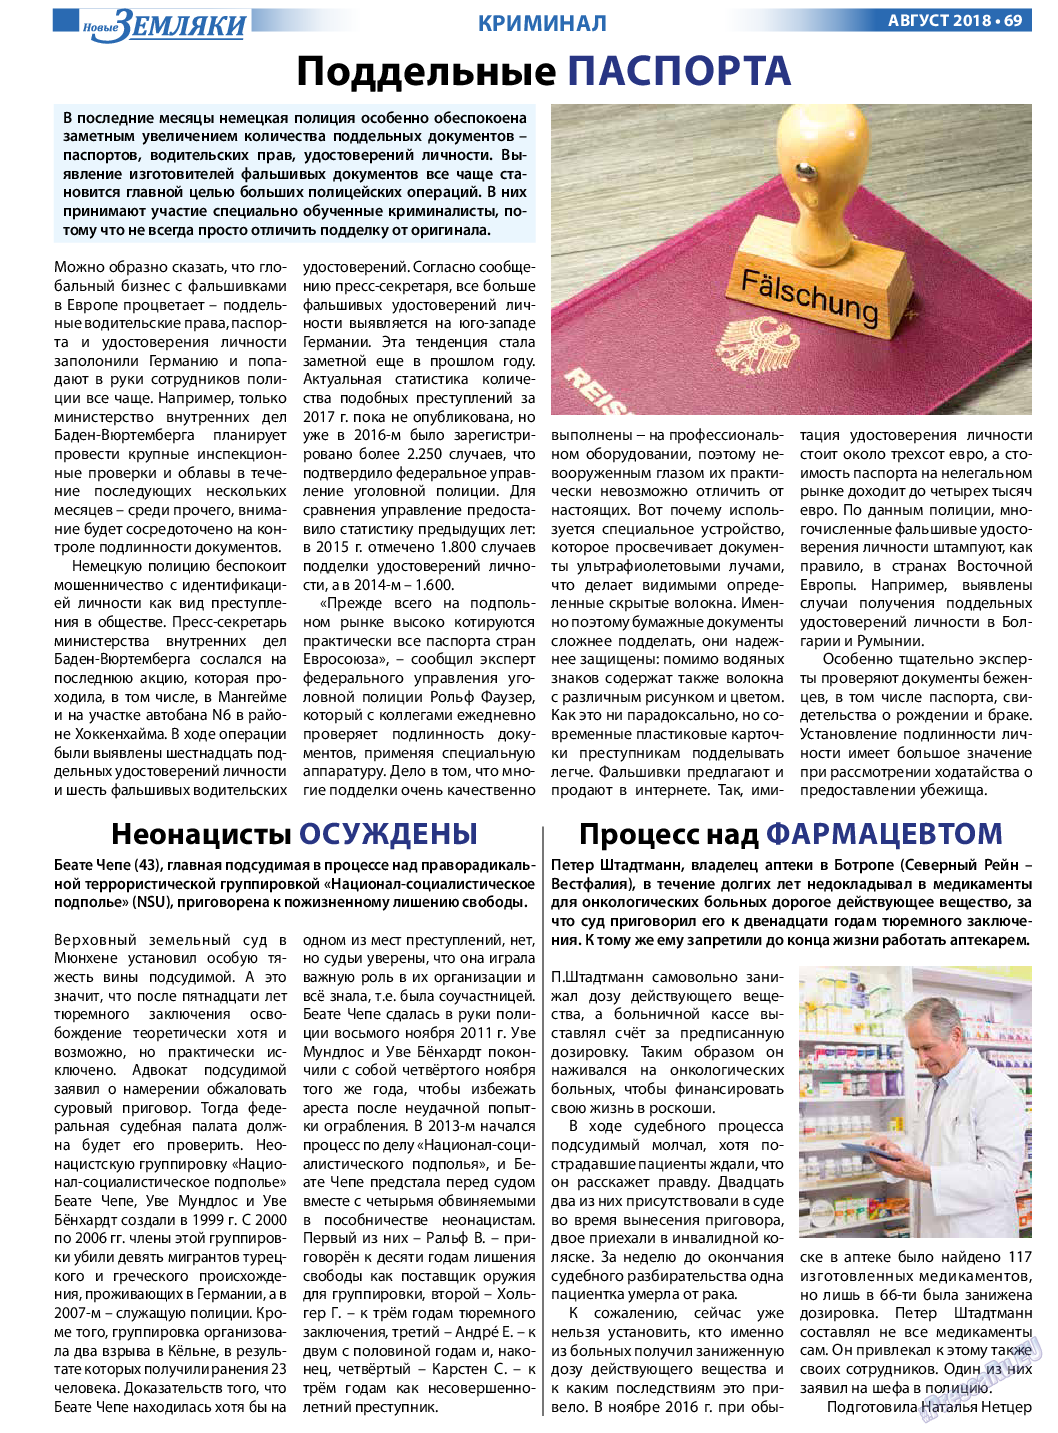 Новые Земляки, газета. 2018 №8 стр.69